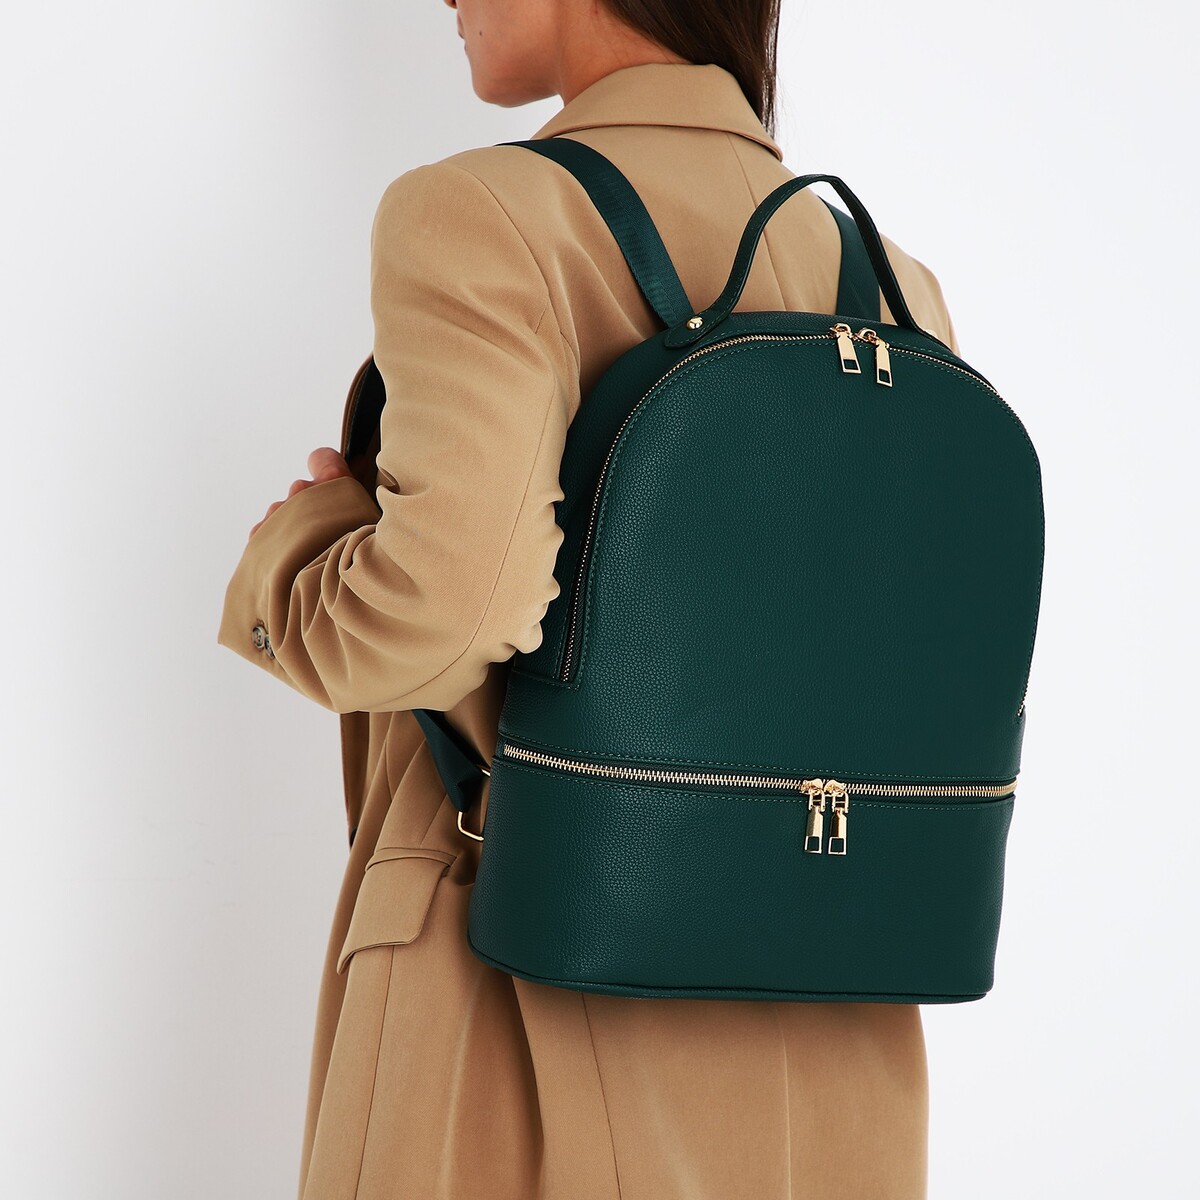 Рюкзак женский из искусственной кожи на молнии, 2 кармана, цвет зеленый